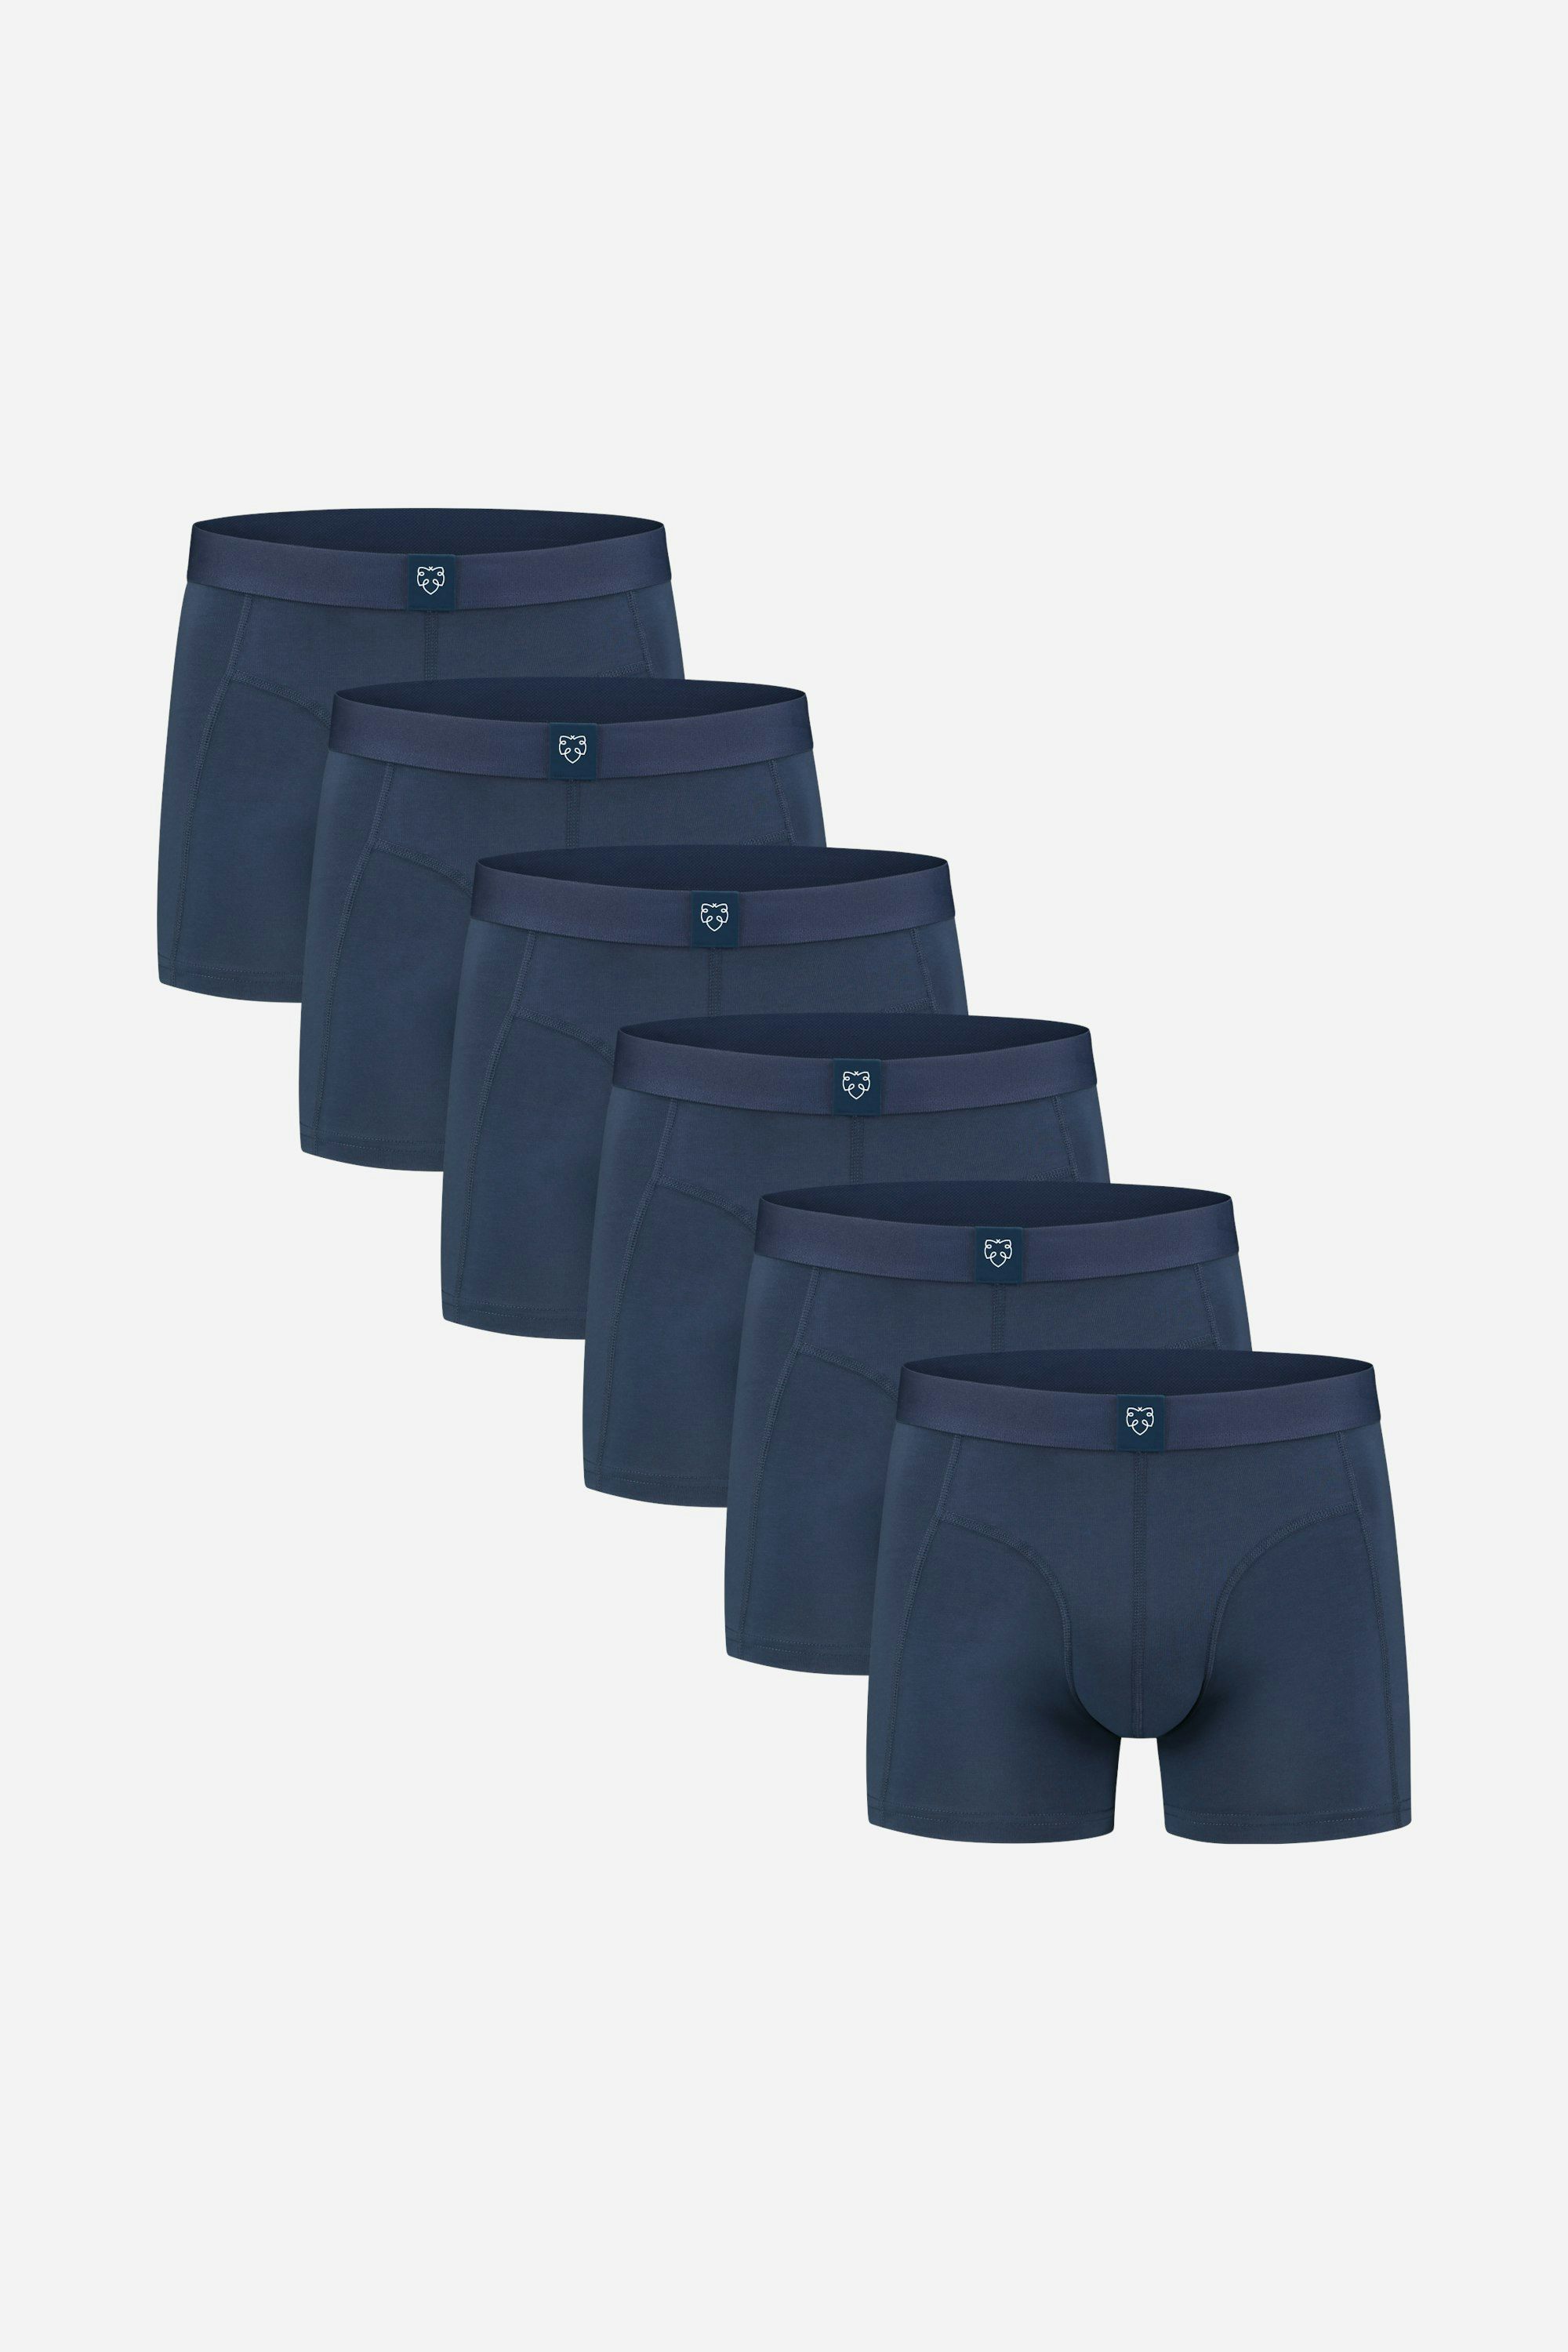 Life is Good Men's Underwear - Super Soft Boxer Briefs (6 Pack